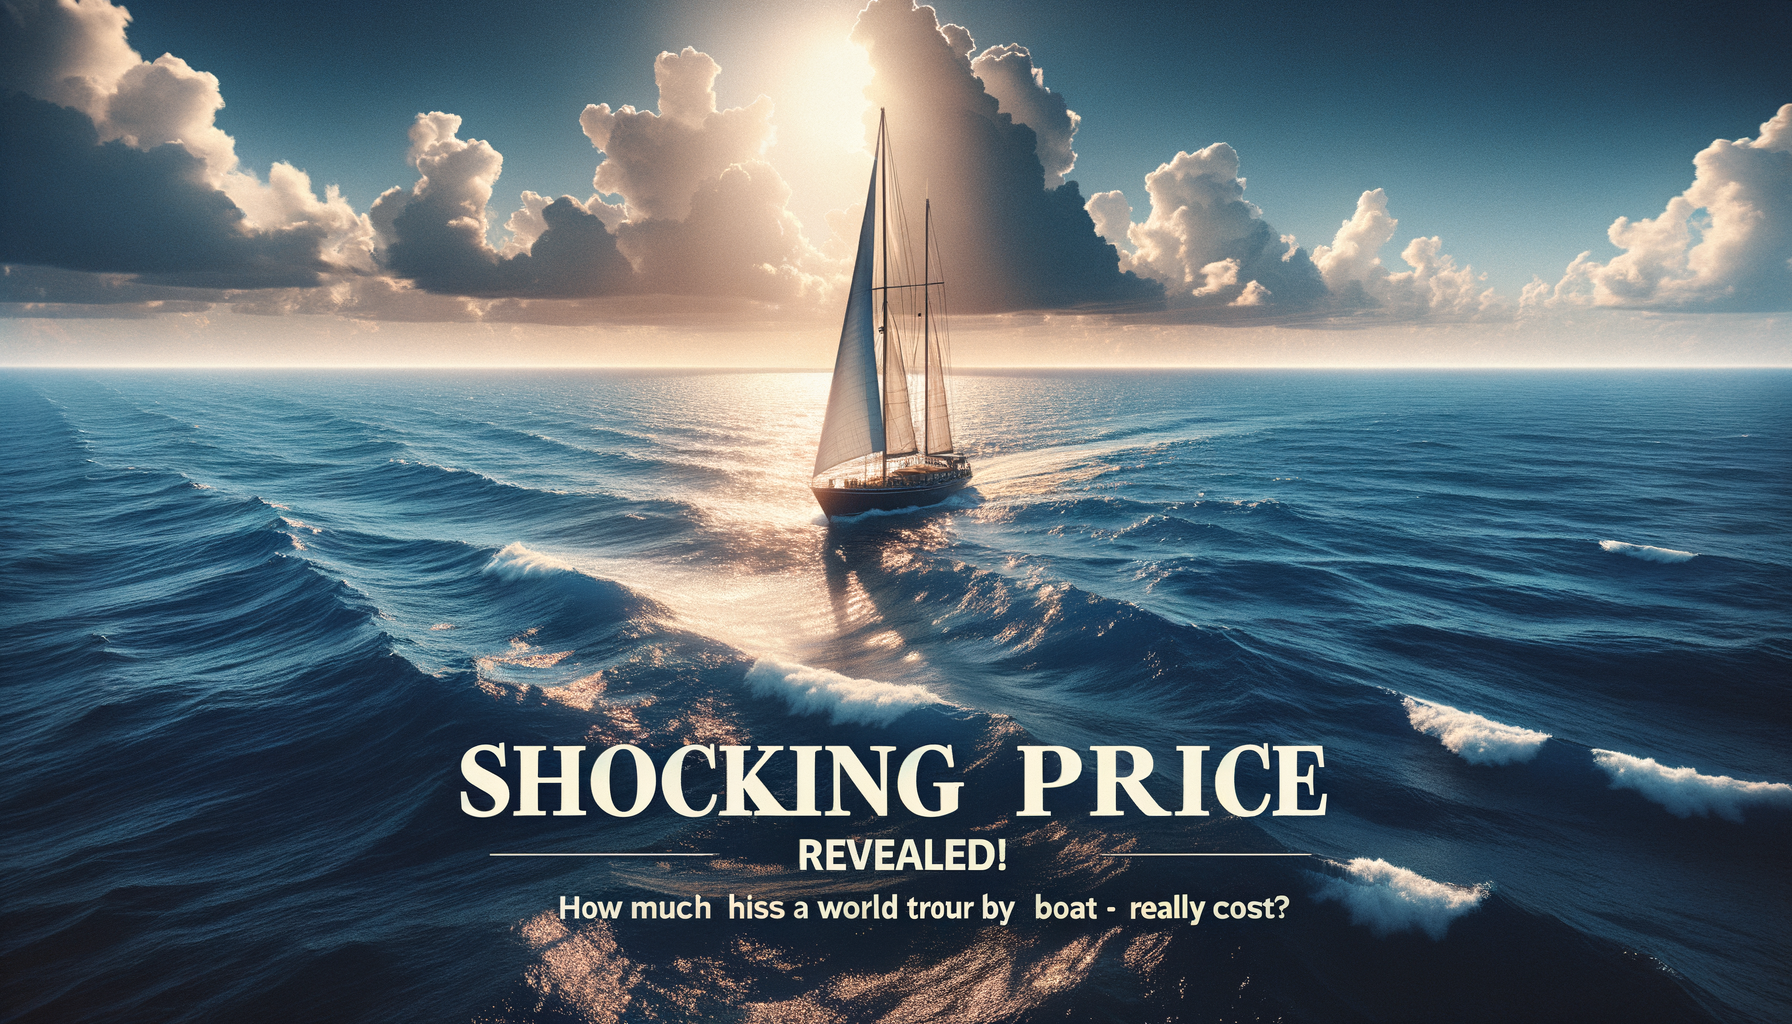 découvrez le prix choc pour un tour du monde en bateau et apprenez combien cela coûte vraiment.